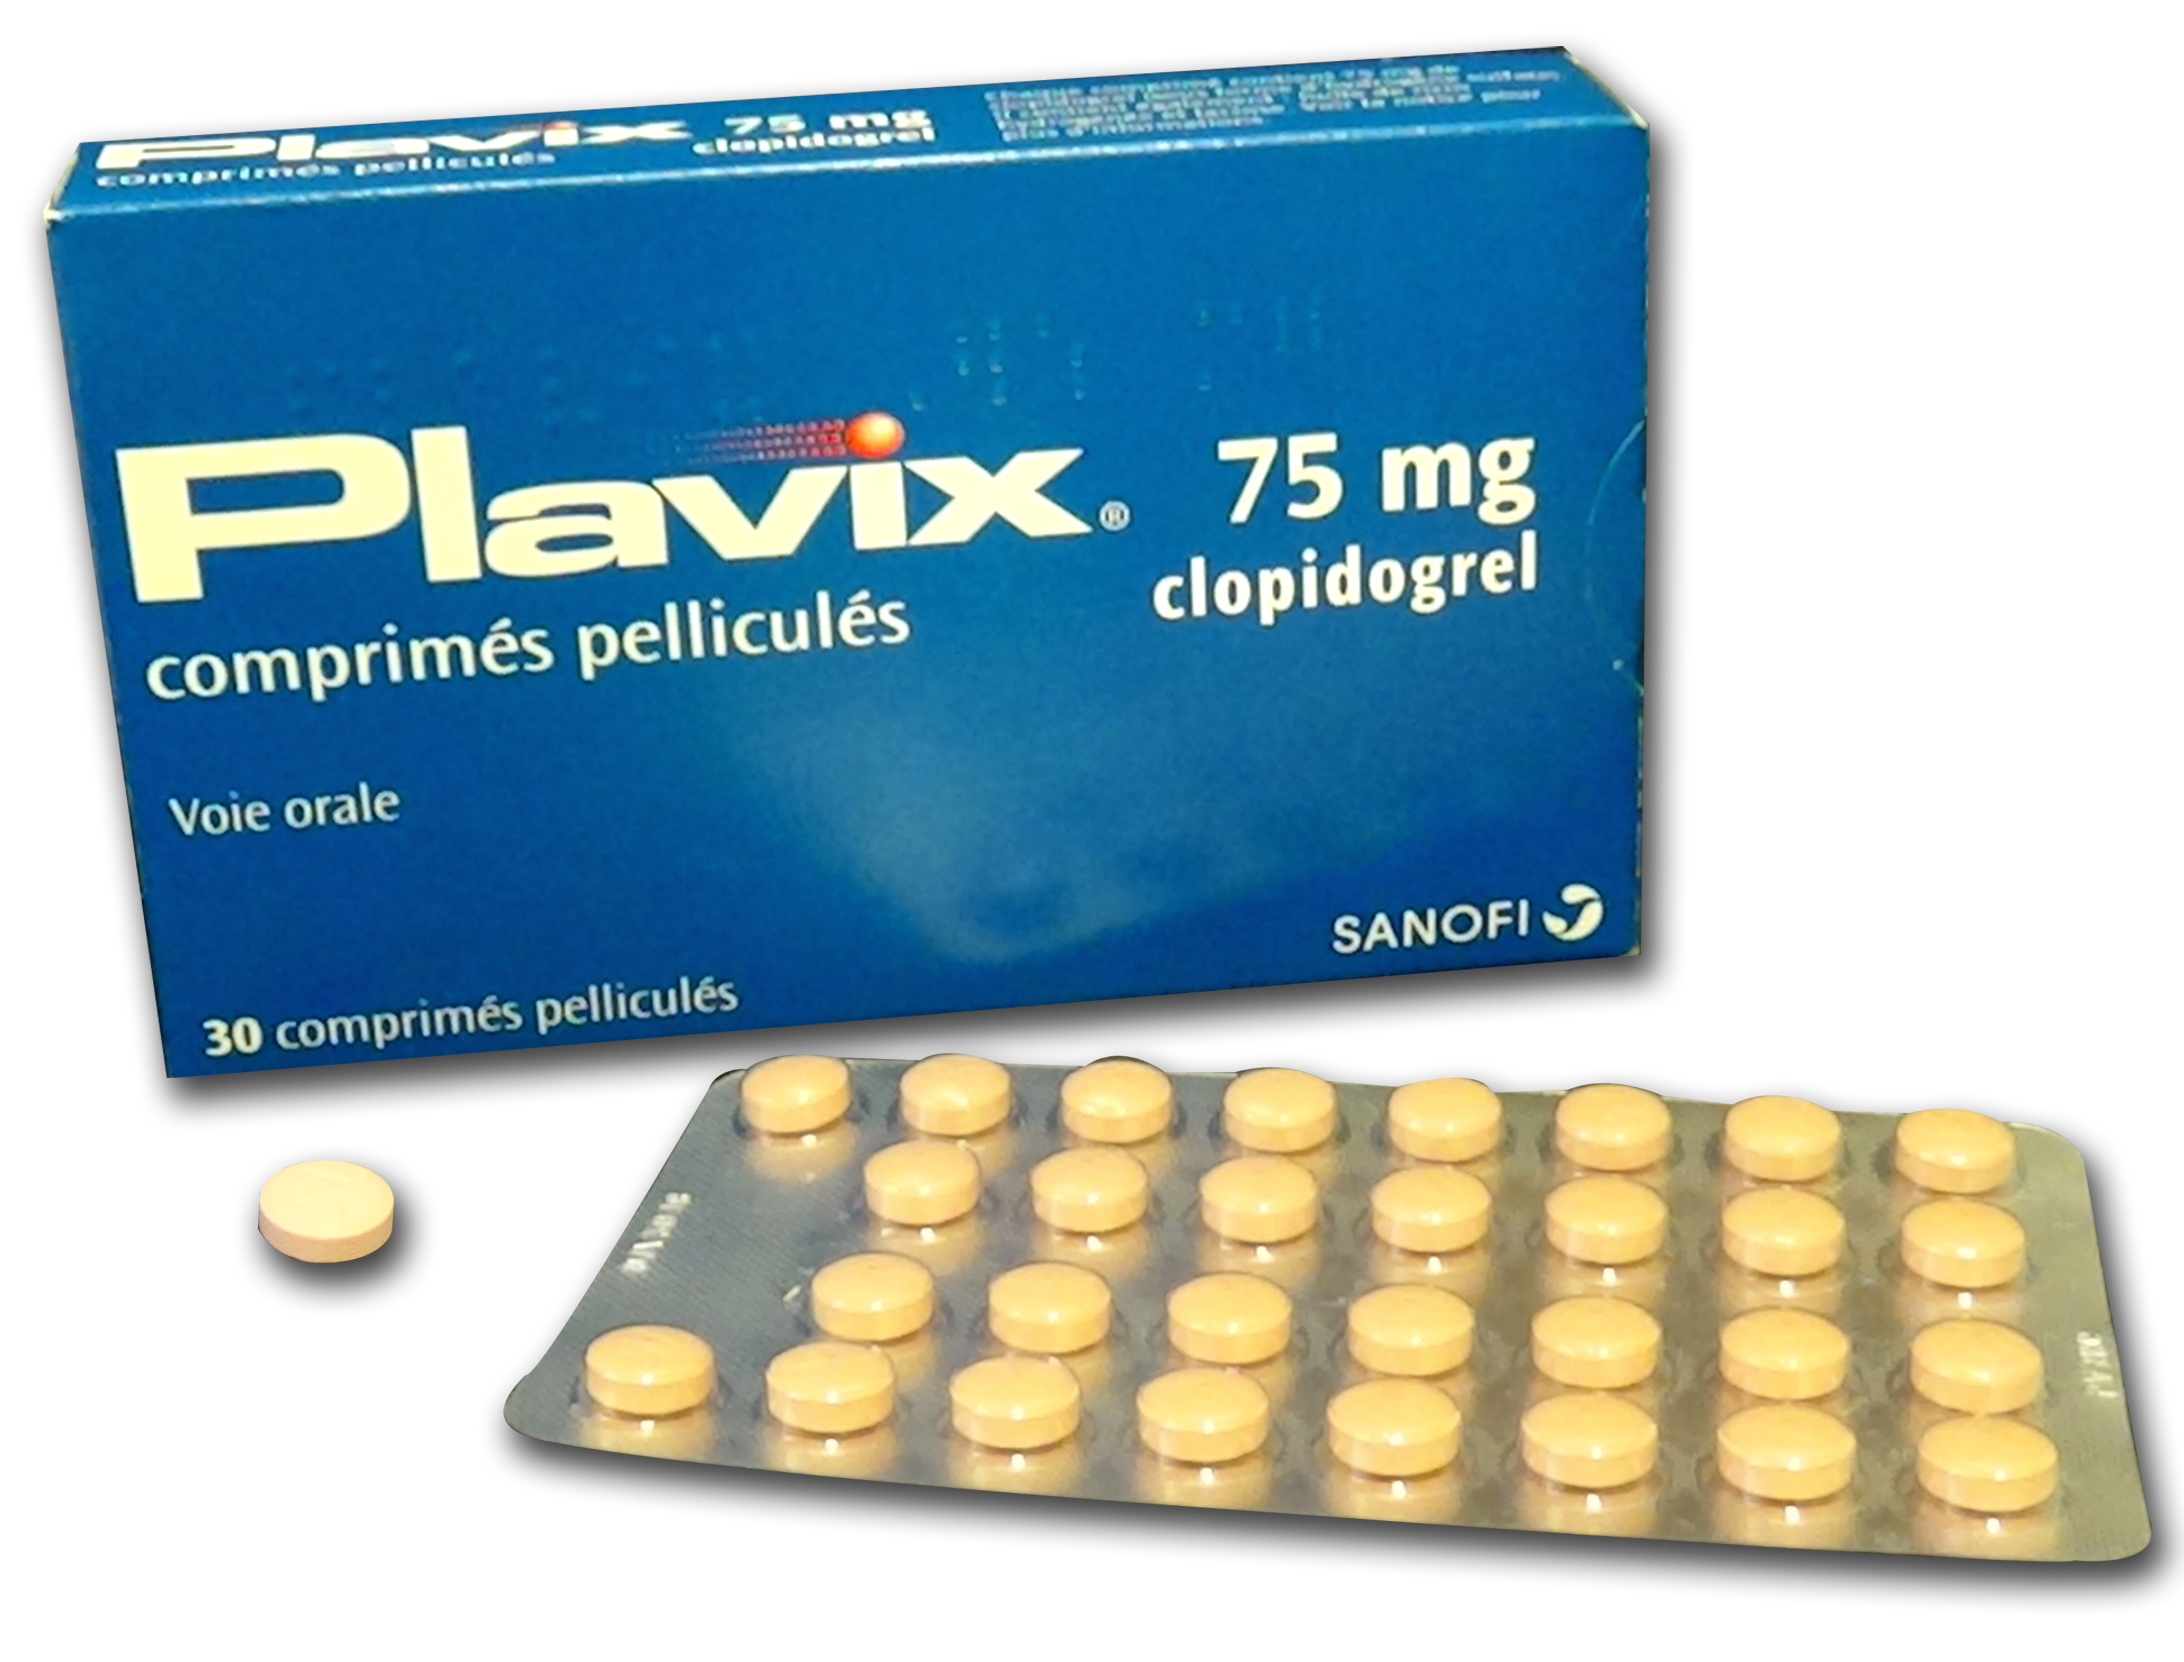 Visuel de l'emballage du médicament PLAVIX 75 mg.